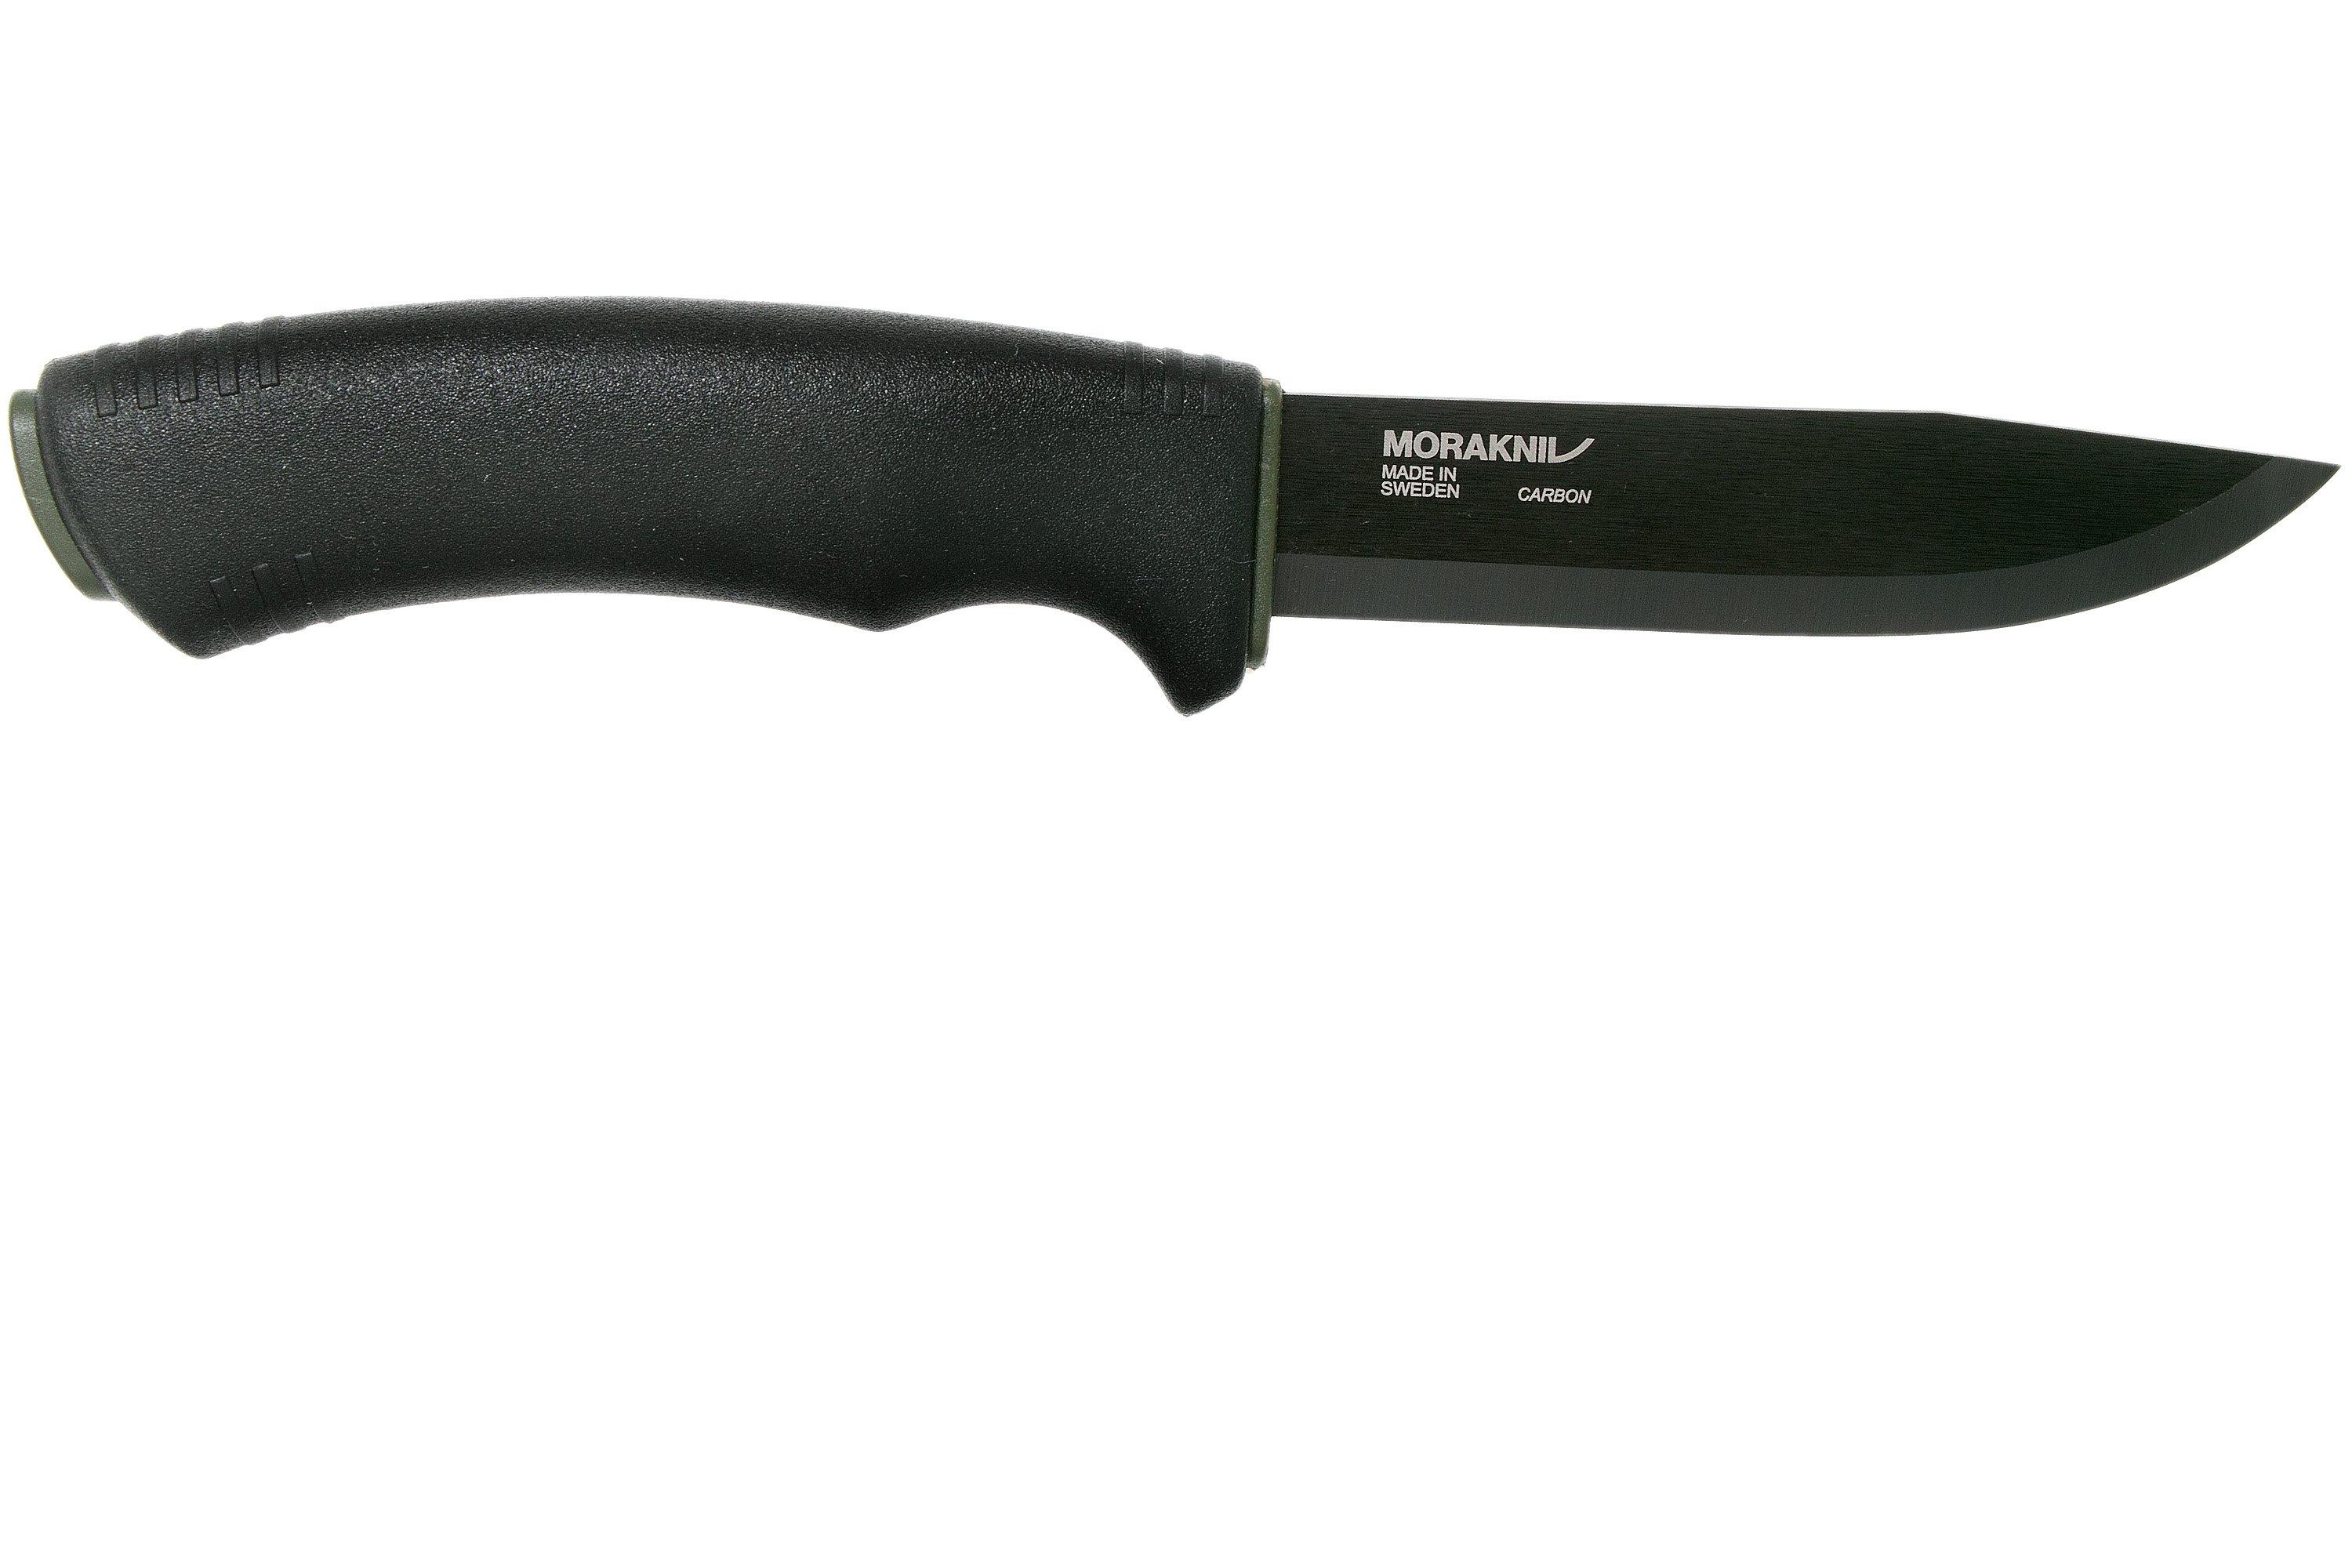 Morakniv Bushcraft Black Expert 12294 bushcraft knife